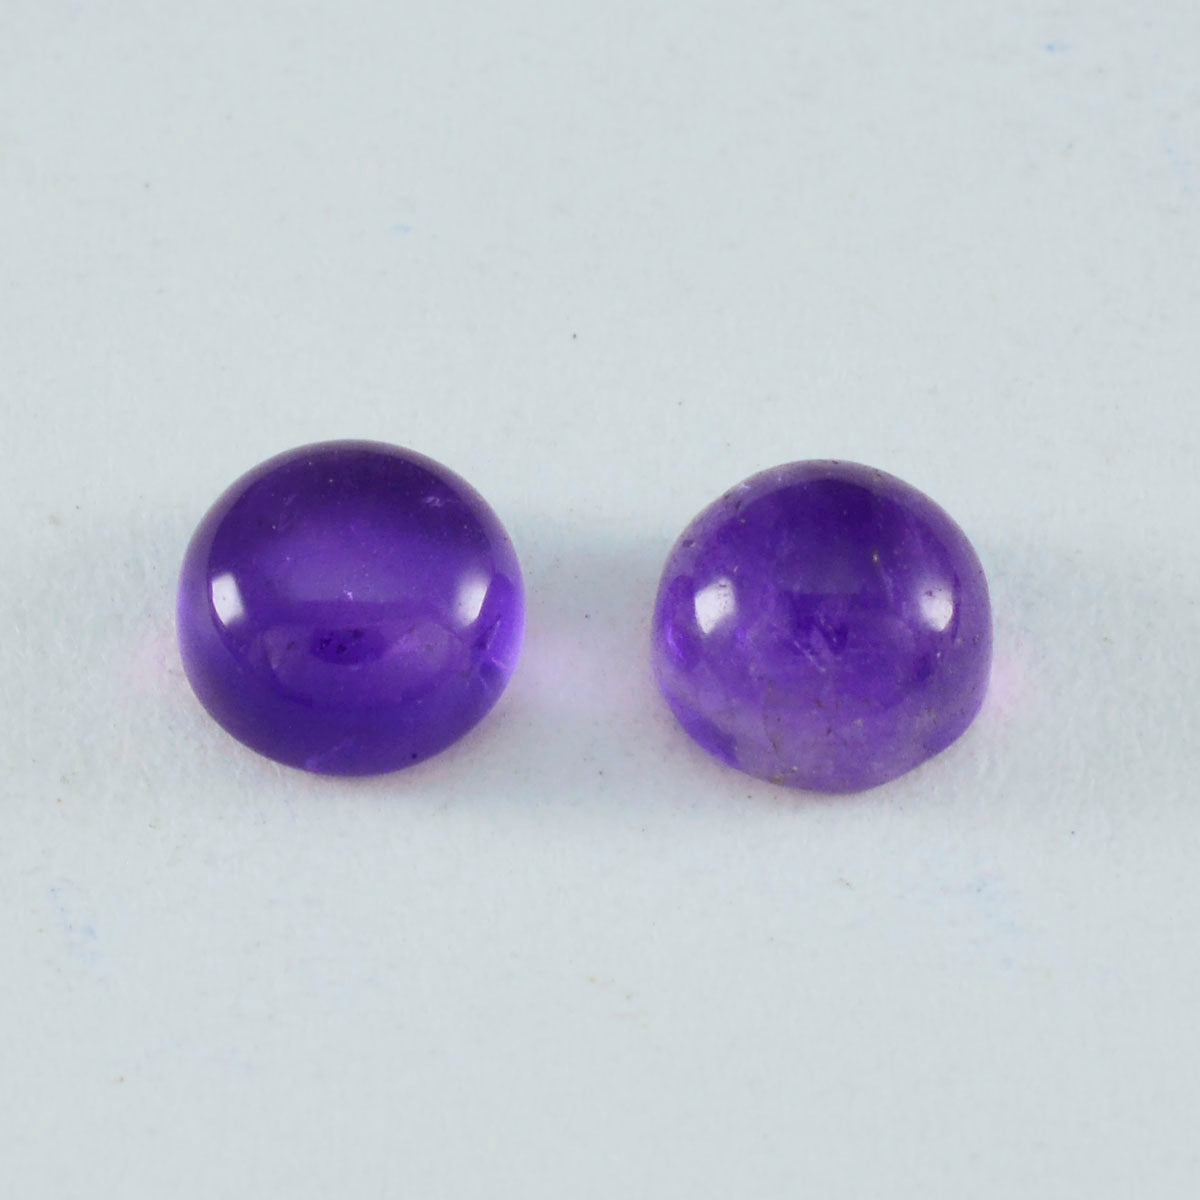 riyogems 1 шт. фиолетовый аметист кабошон 7x7 мм круглой формы удивительного качества, свободный драгоценный камень